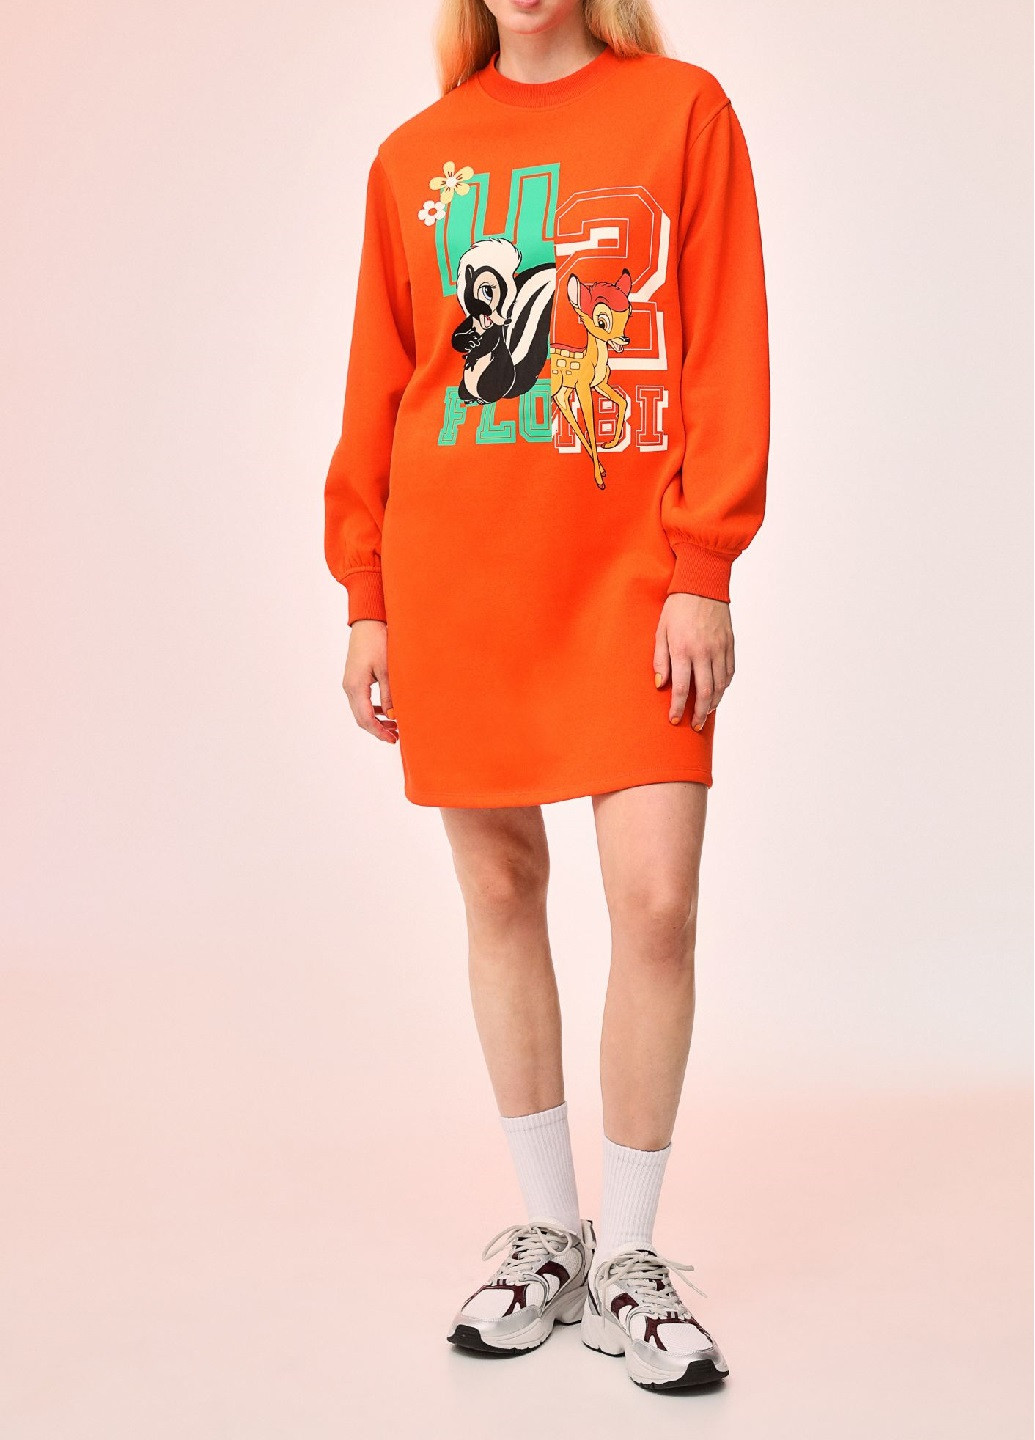 Оранжевое спортивное платье H&M с рисунком